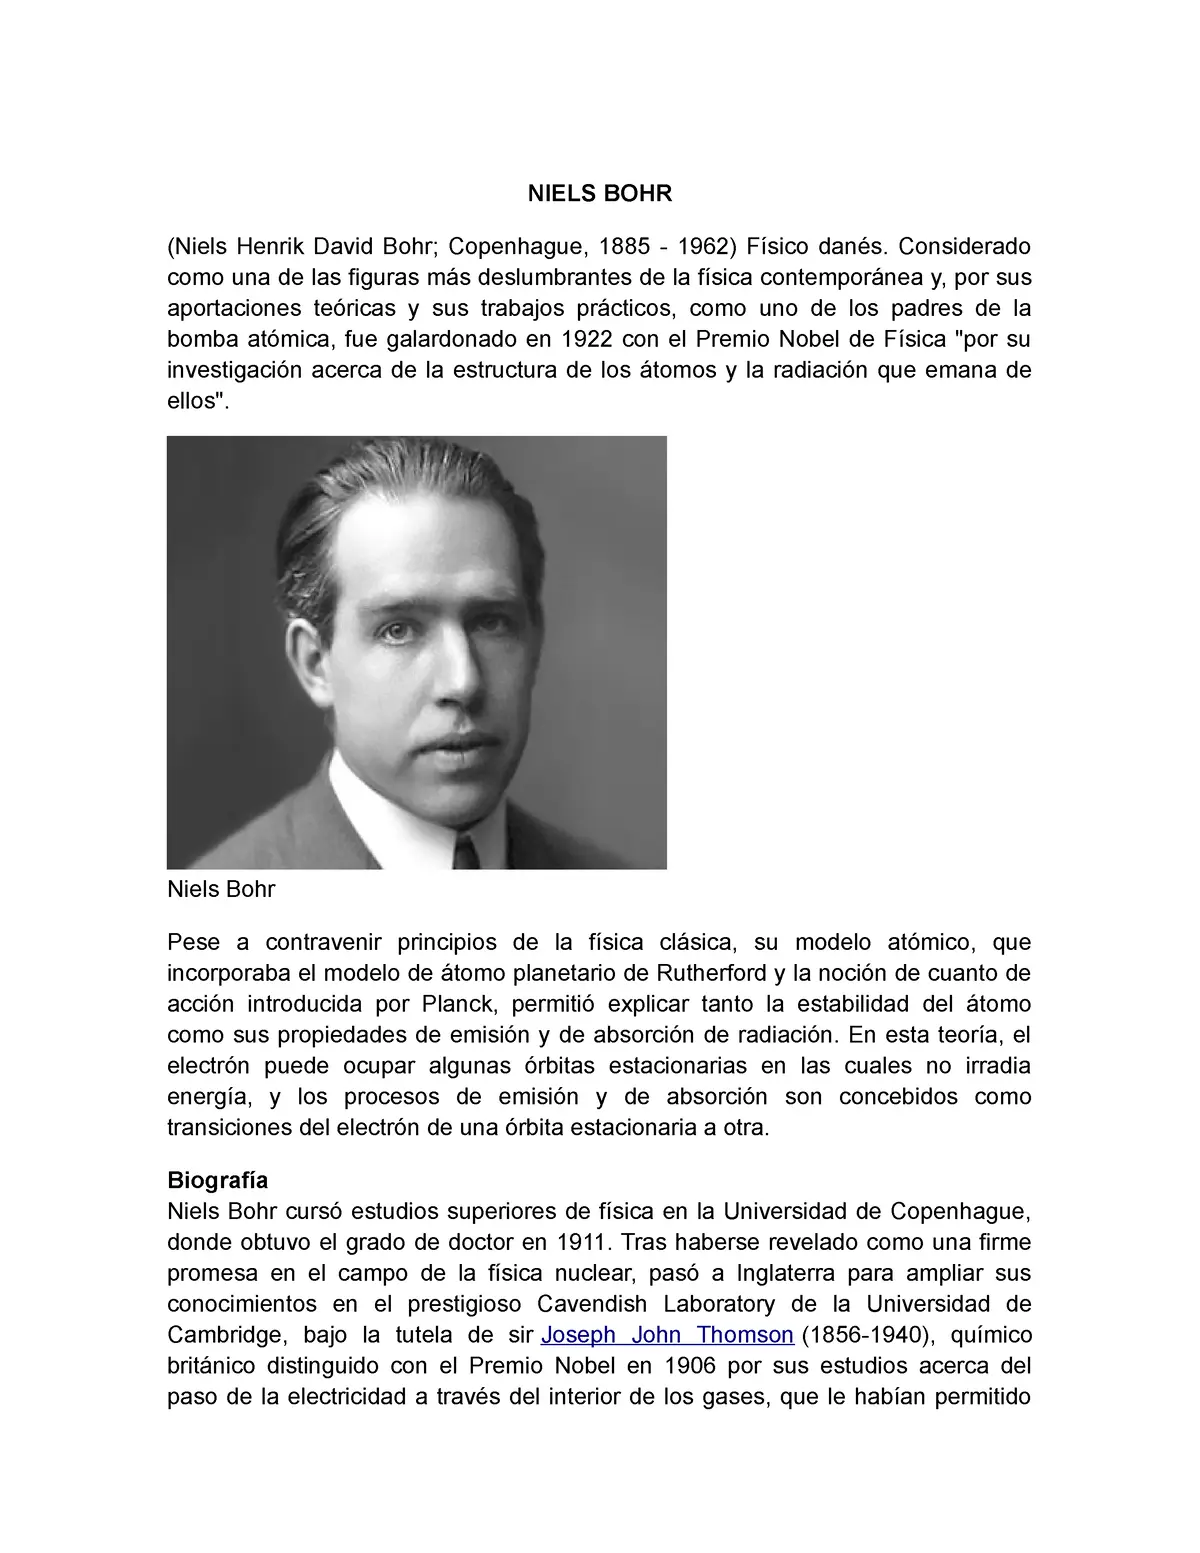 niels bohr biografia resumida - Quién fue Bohr resumen